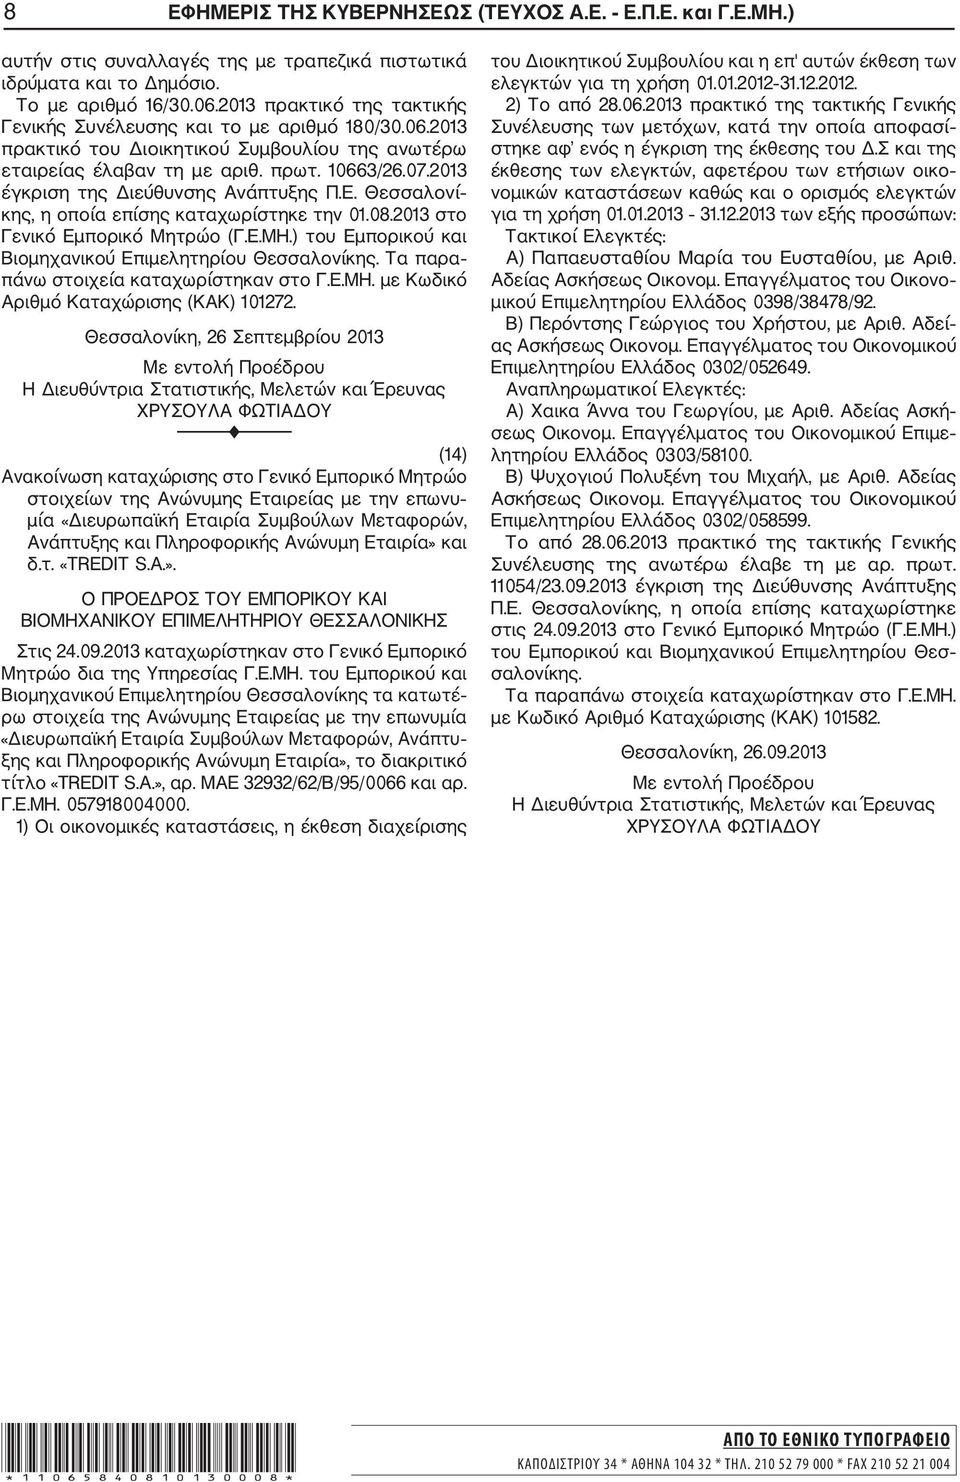 2013 έγκριση της Διεύθυνσης Ανάπτυξης Π.Ε. Θεσσαλονί κης, η οποία επίσης καταχωρίστηκε την 01.08.2013 στο Γενικό Εμπορικό Μητρώο (Γ.Ε.ΜΗ.